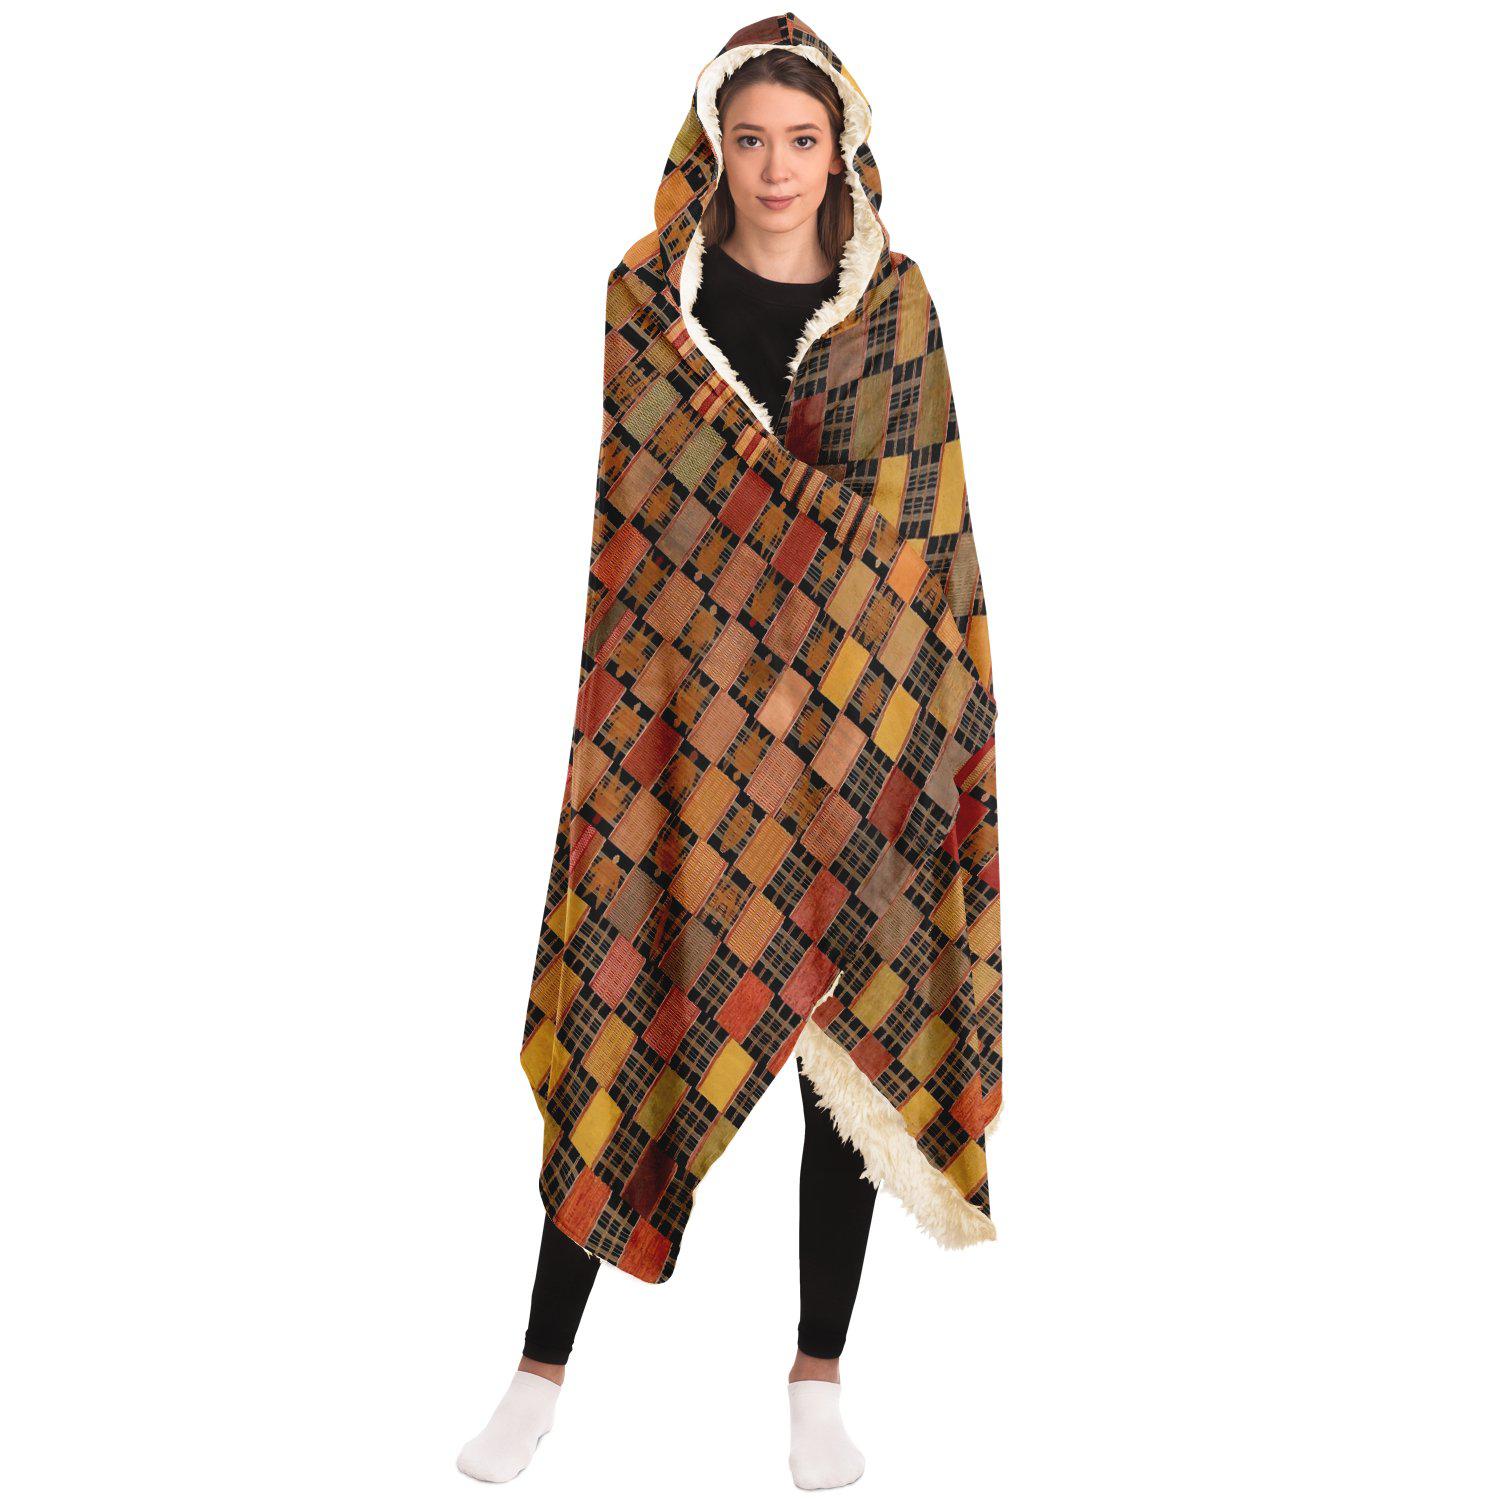 Hooded Blanket - AOP Ewe Culture Inspired Hooded Blanket